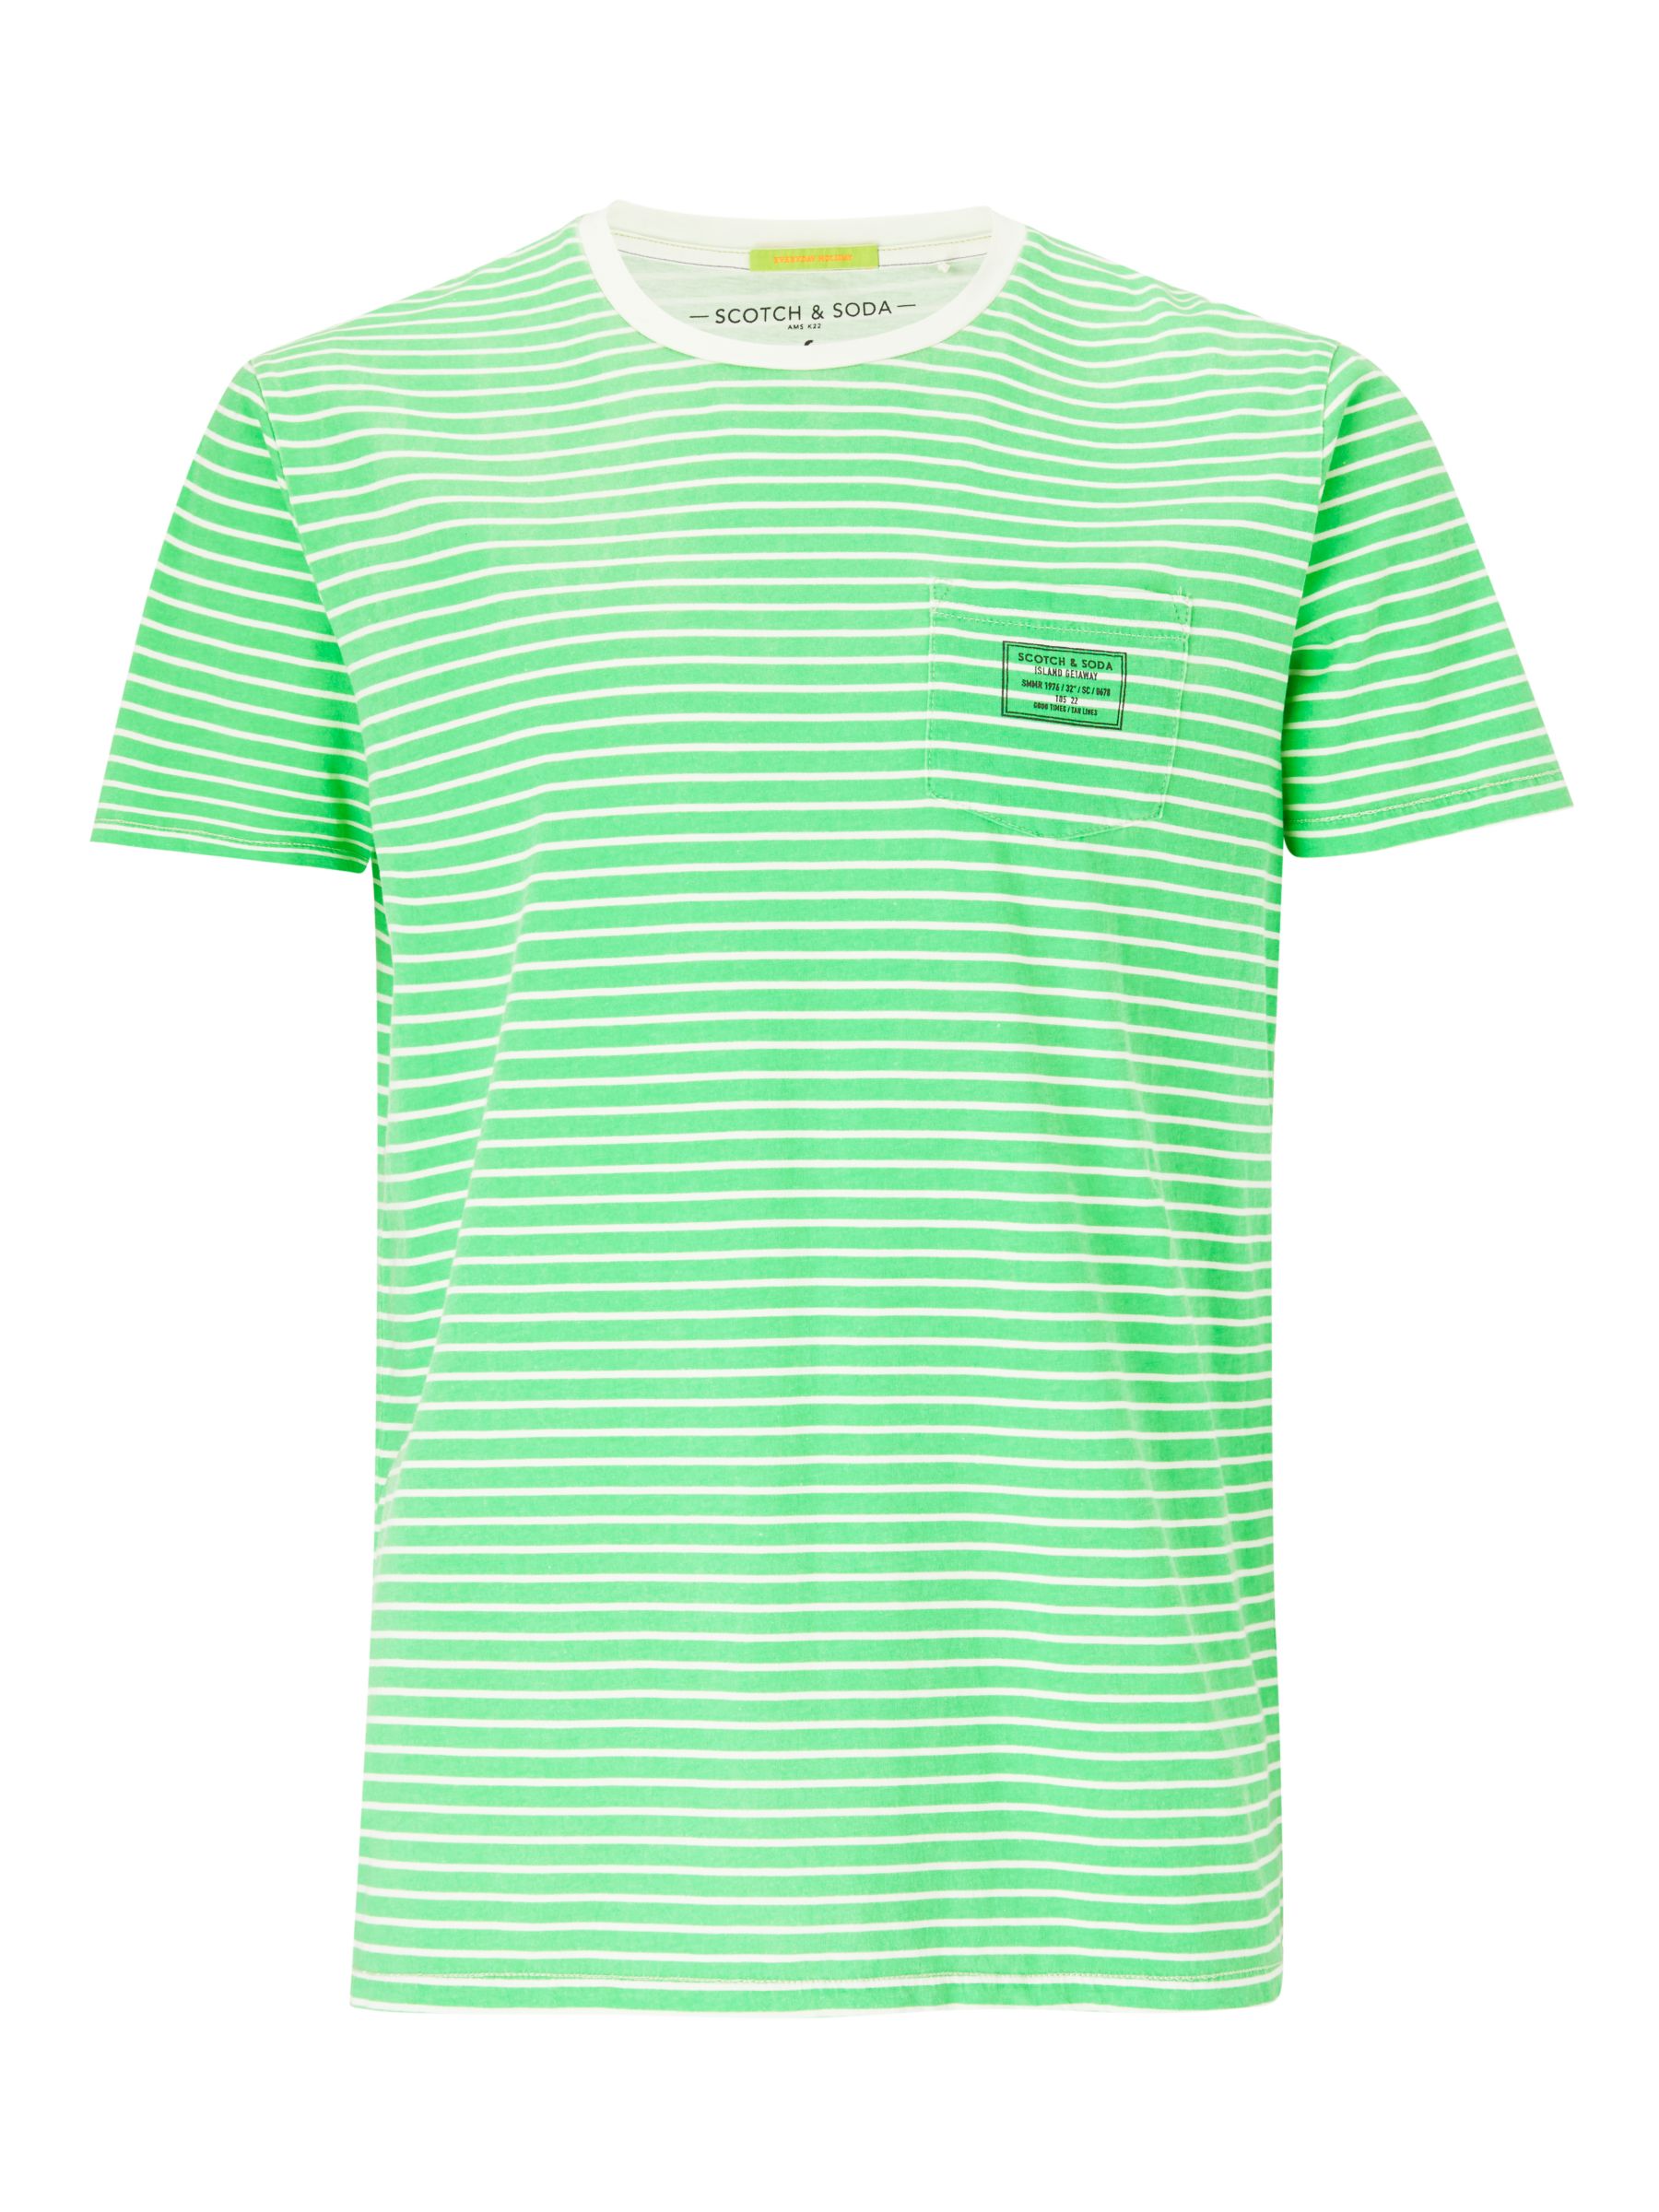 Scotch & Soda Garment Dye Stripe T-Shirt, Green